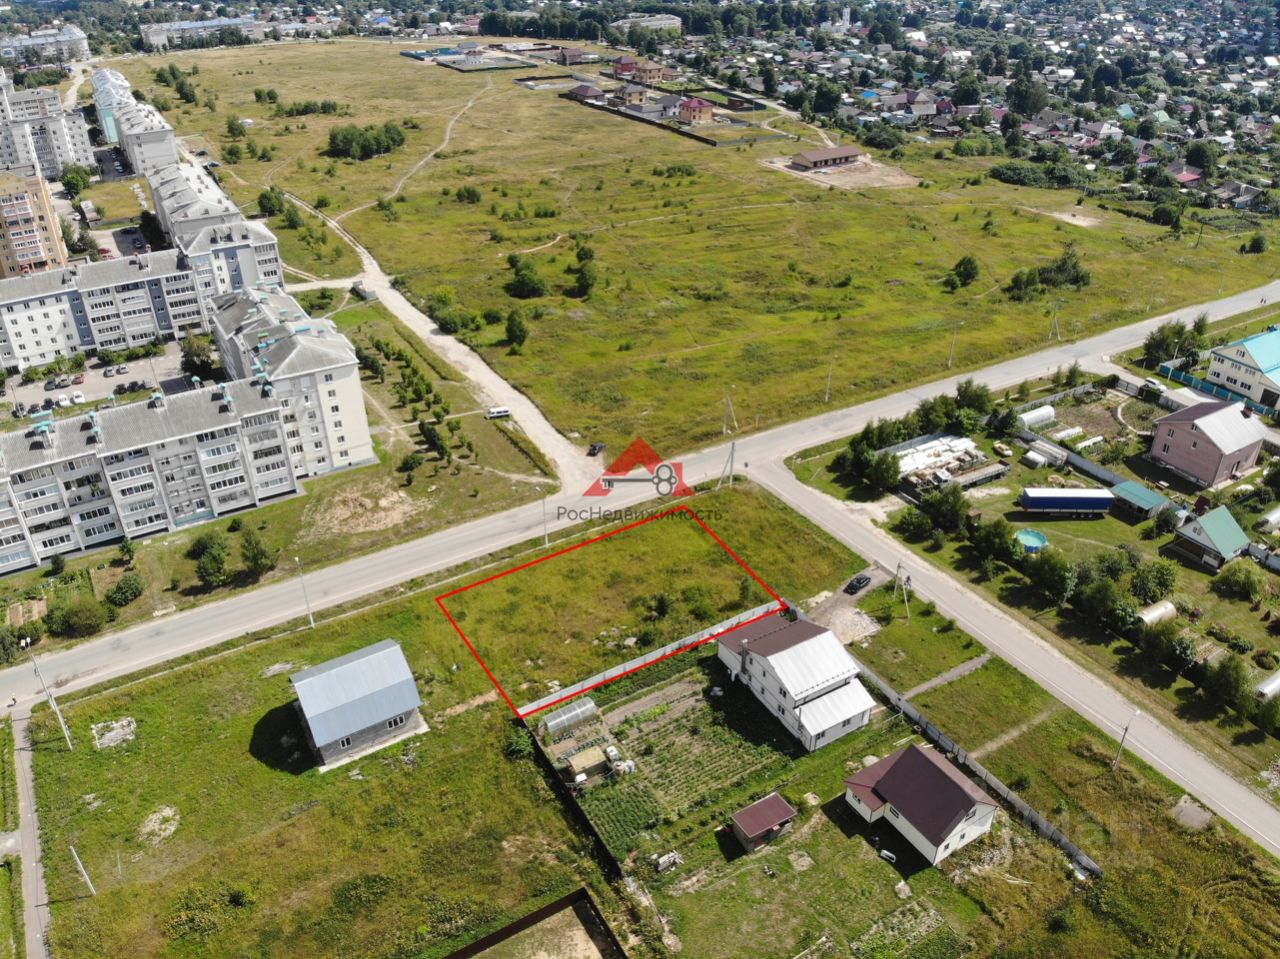 Купить земельный участок ИЖС в Кольчугинском районе Владимирской области,продажа участков под строительство. Найдено 149 объявлений.